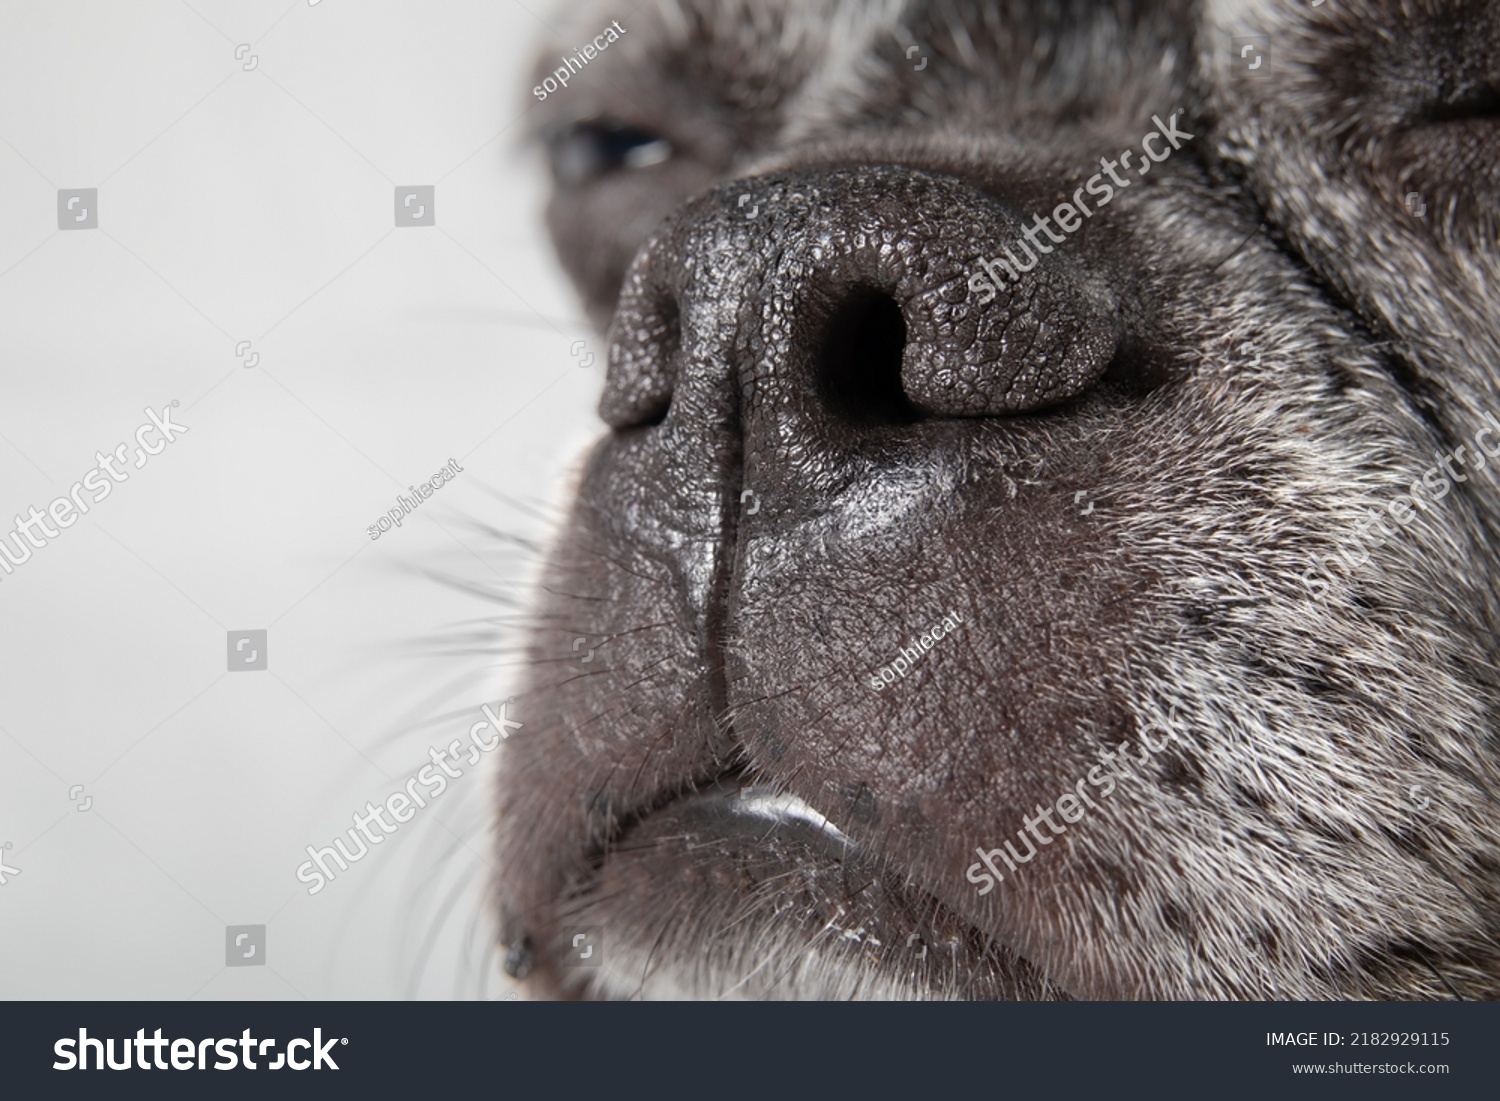 a long flat nose dog